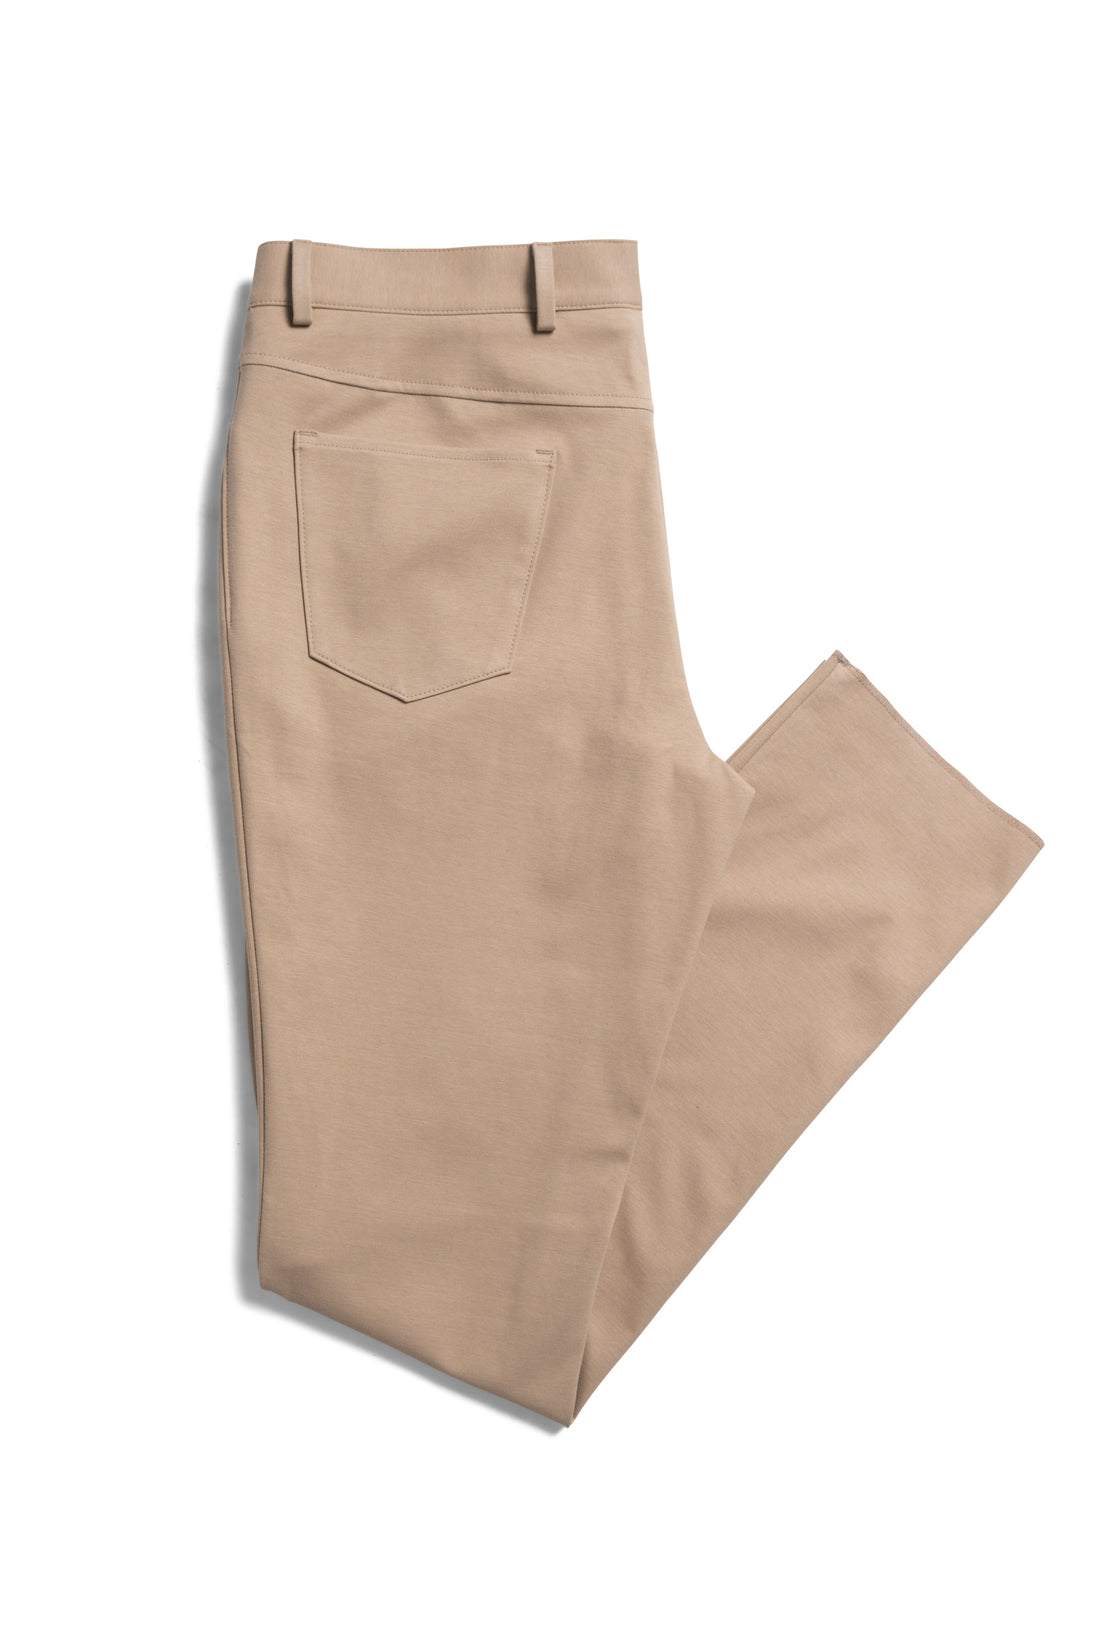 Tan Cotton Elastane PC-Dyed Jersey Pants